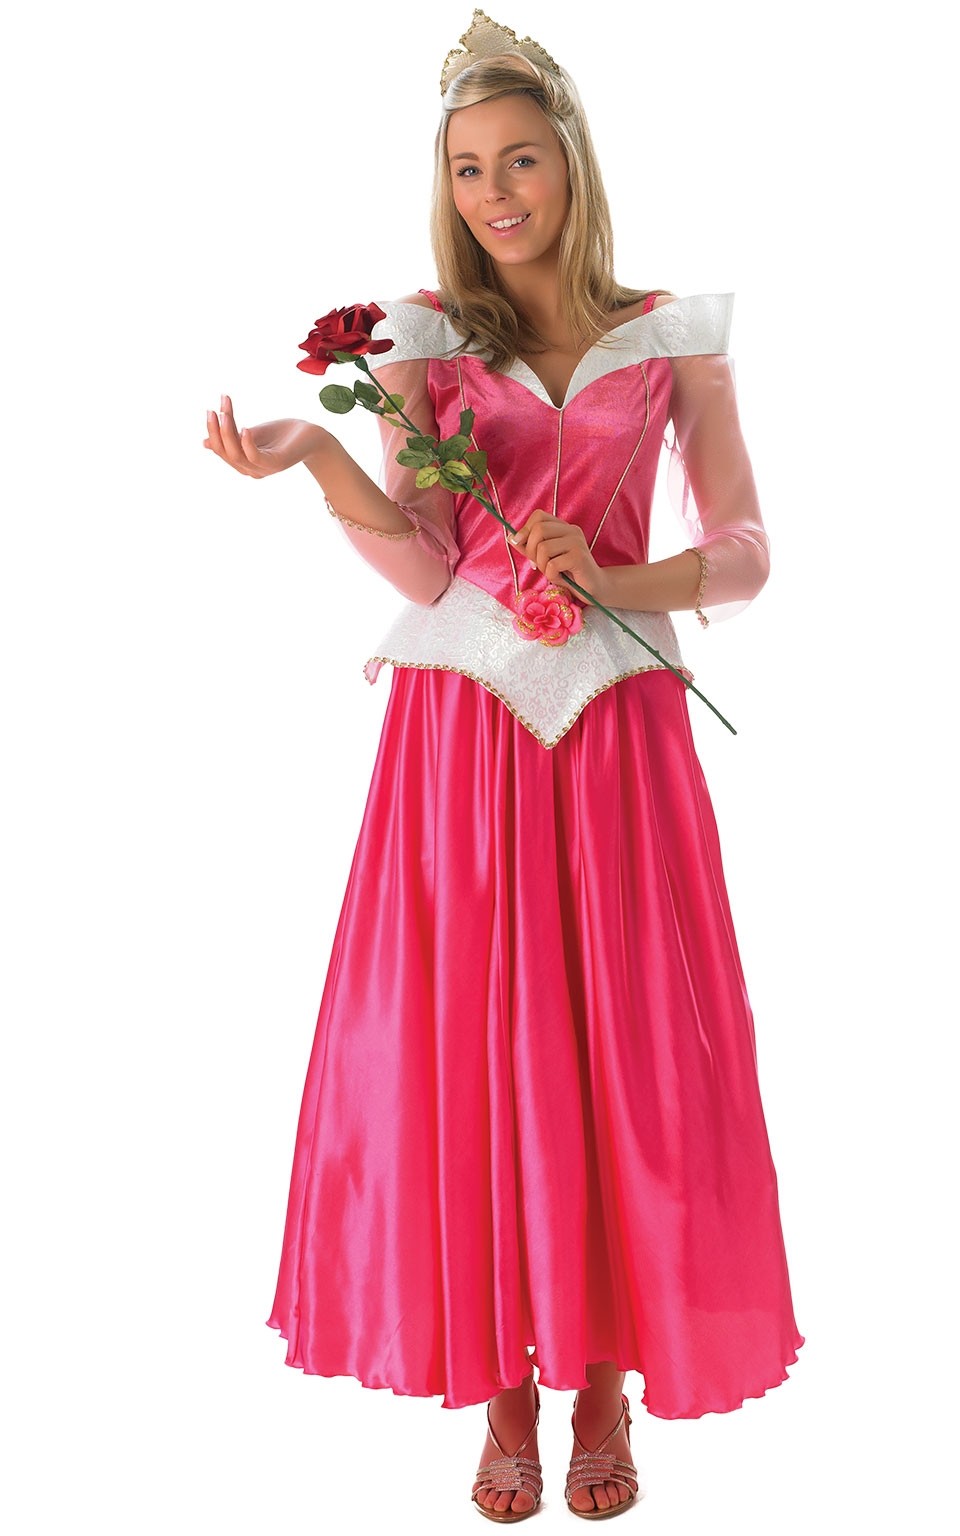 Костюм принцессы Диснея включает в себя длинное розовое платье из блестящег...